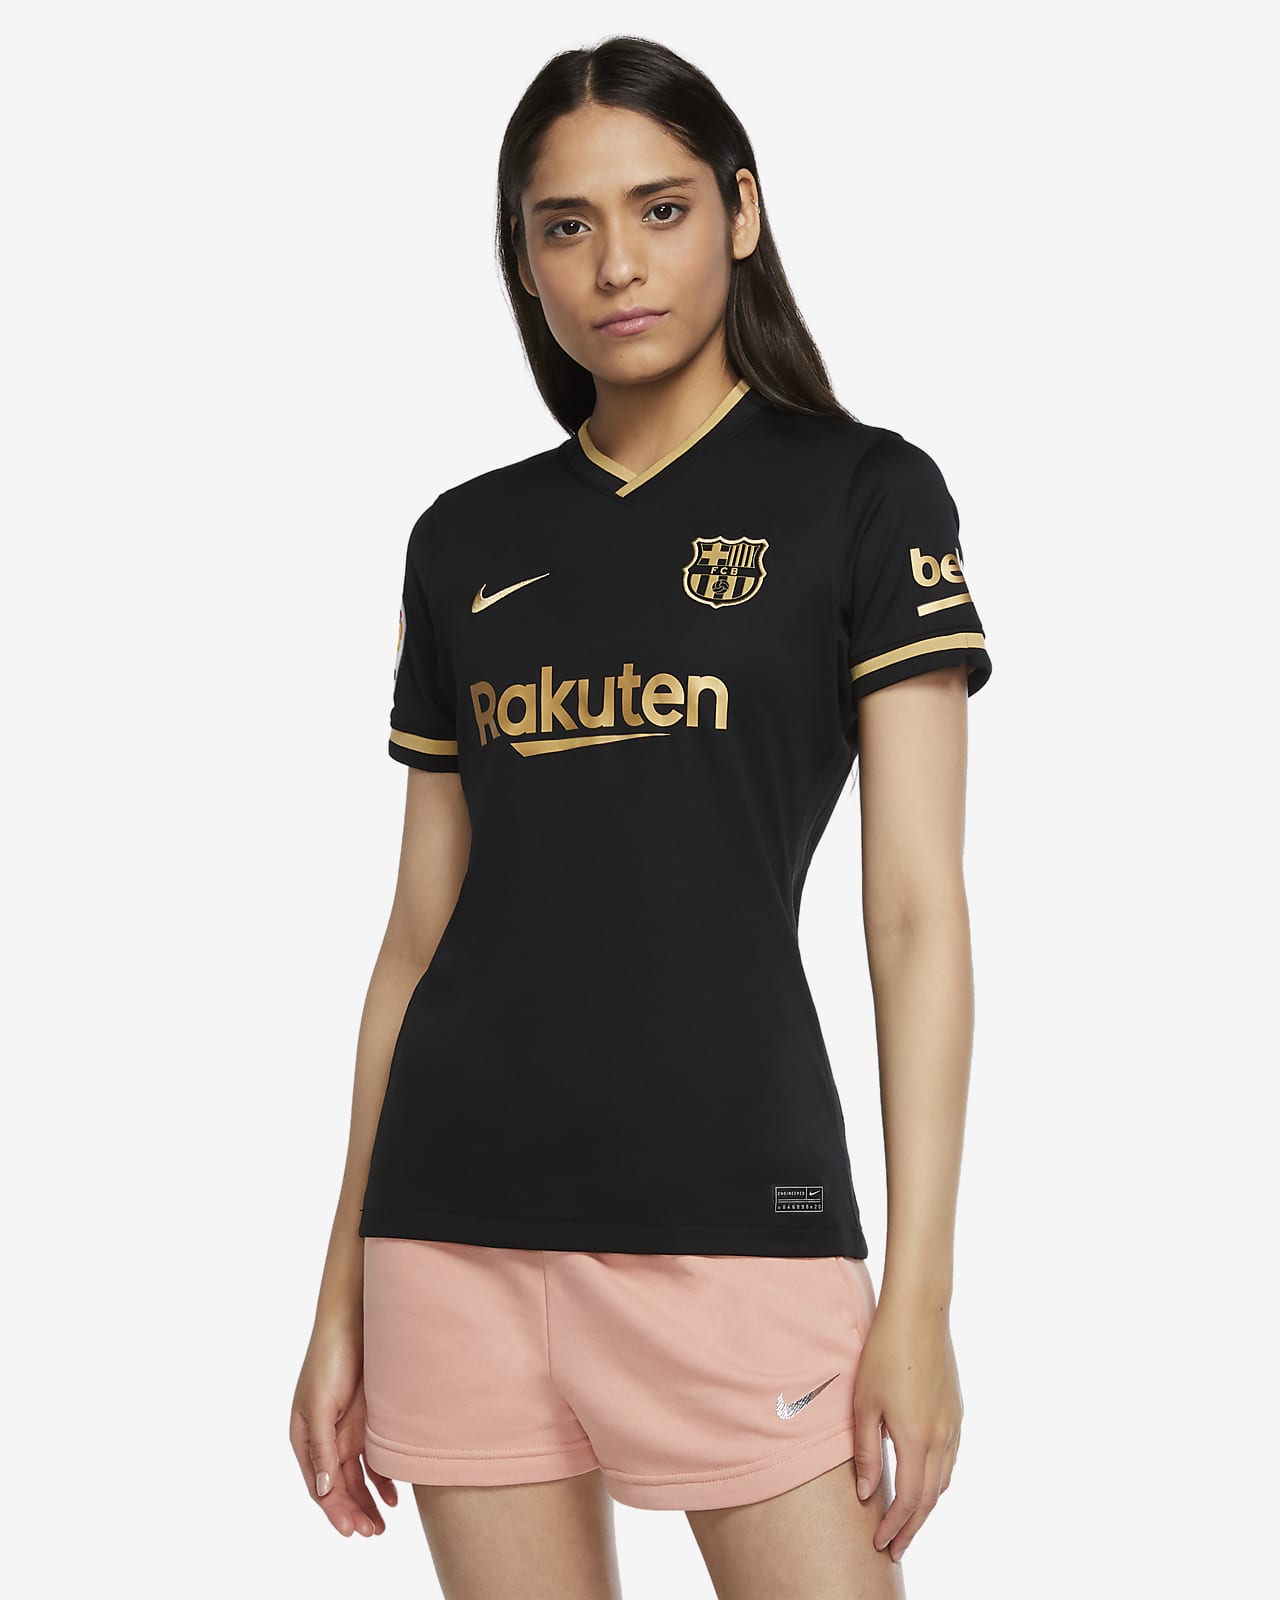 women's barcelona soccer jersey